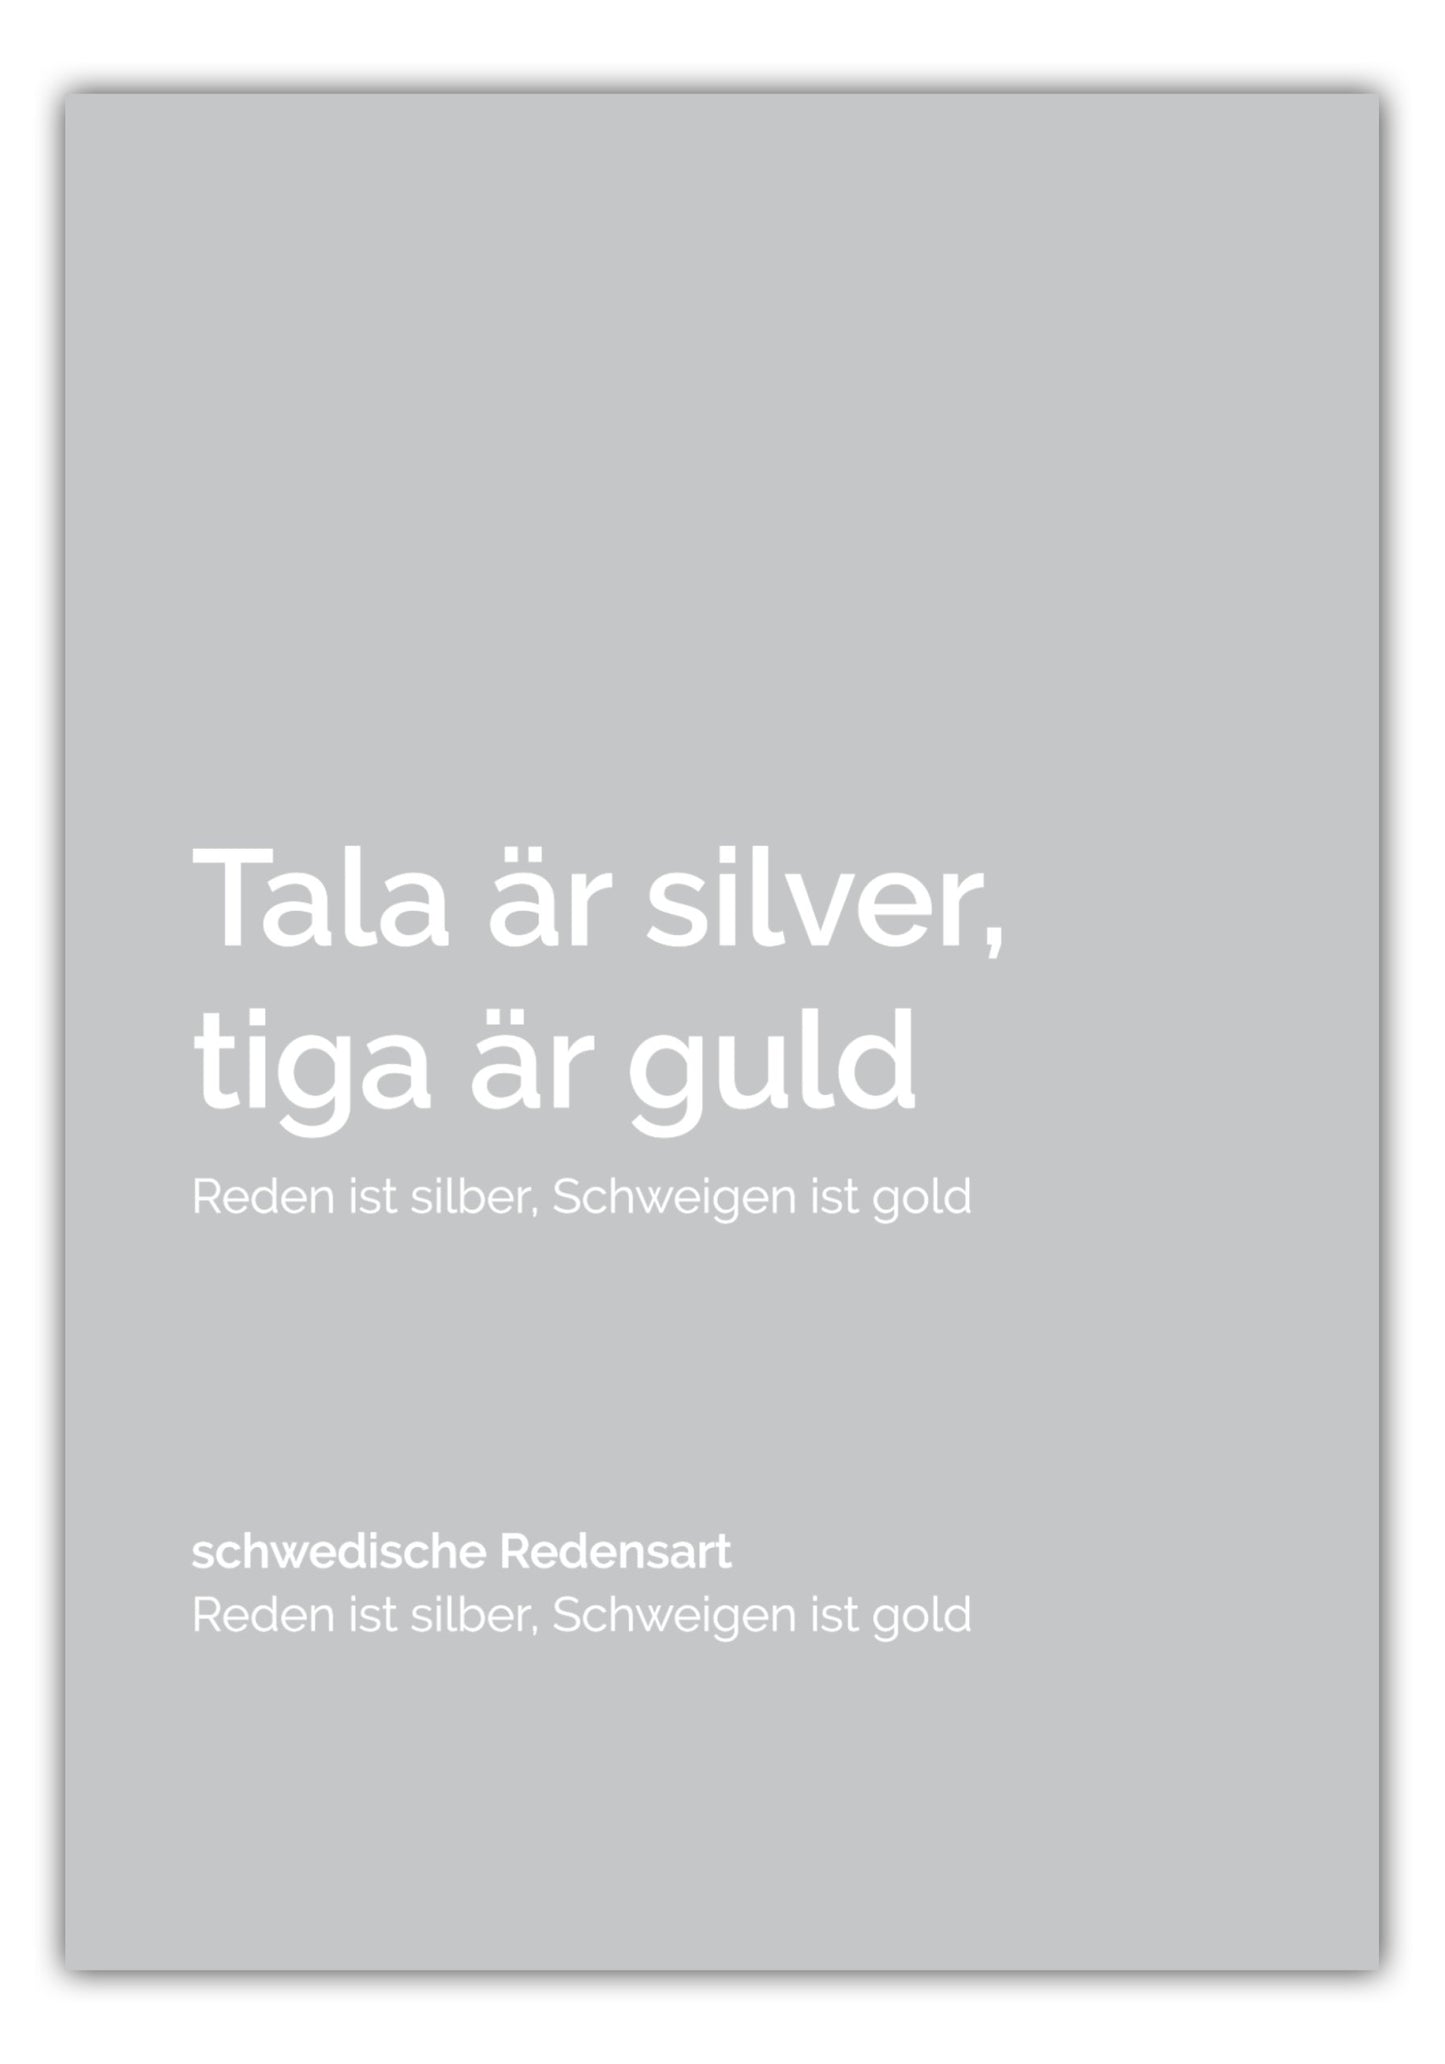 Poster Tala är silver, tiga är guld